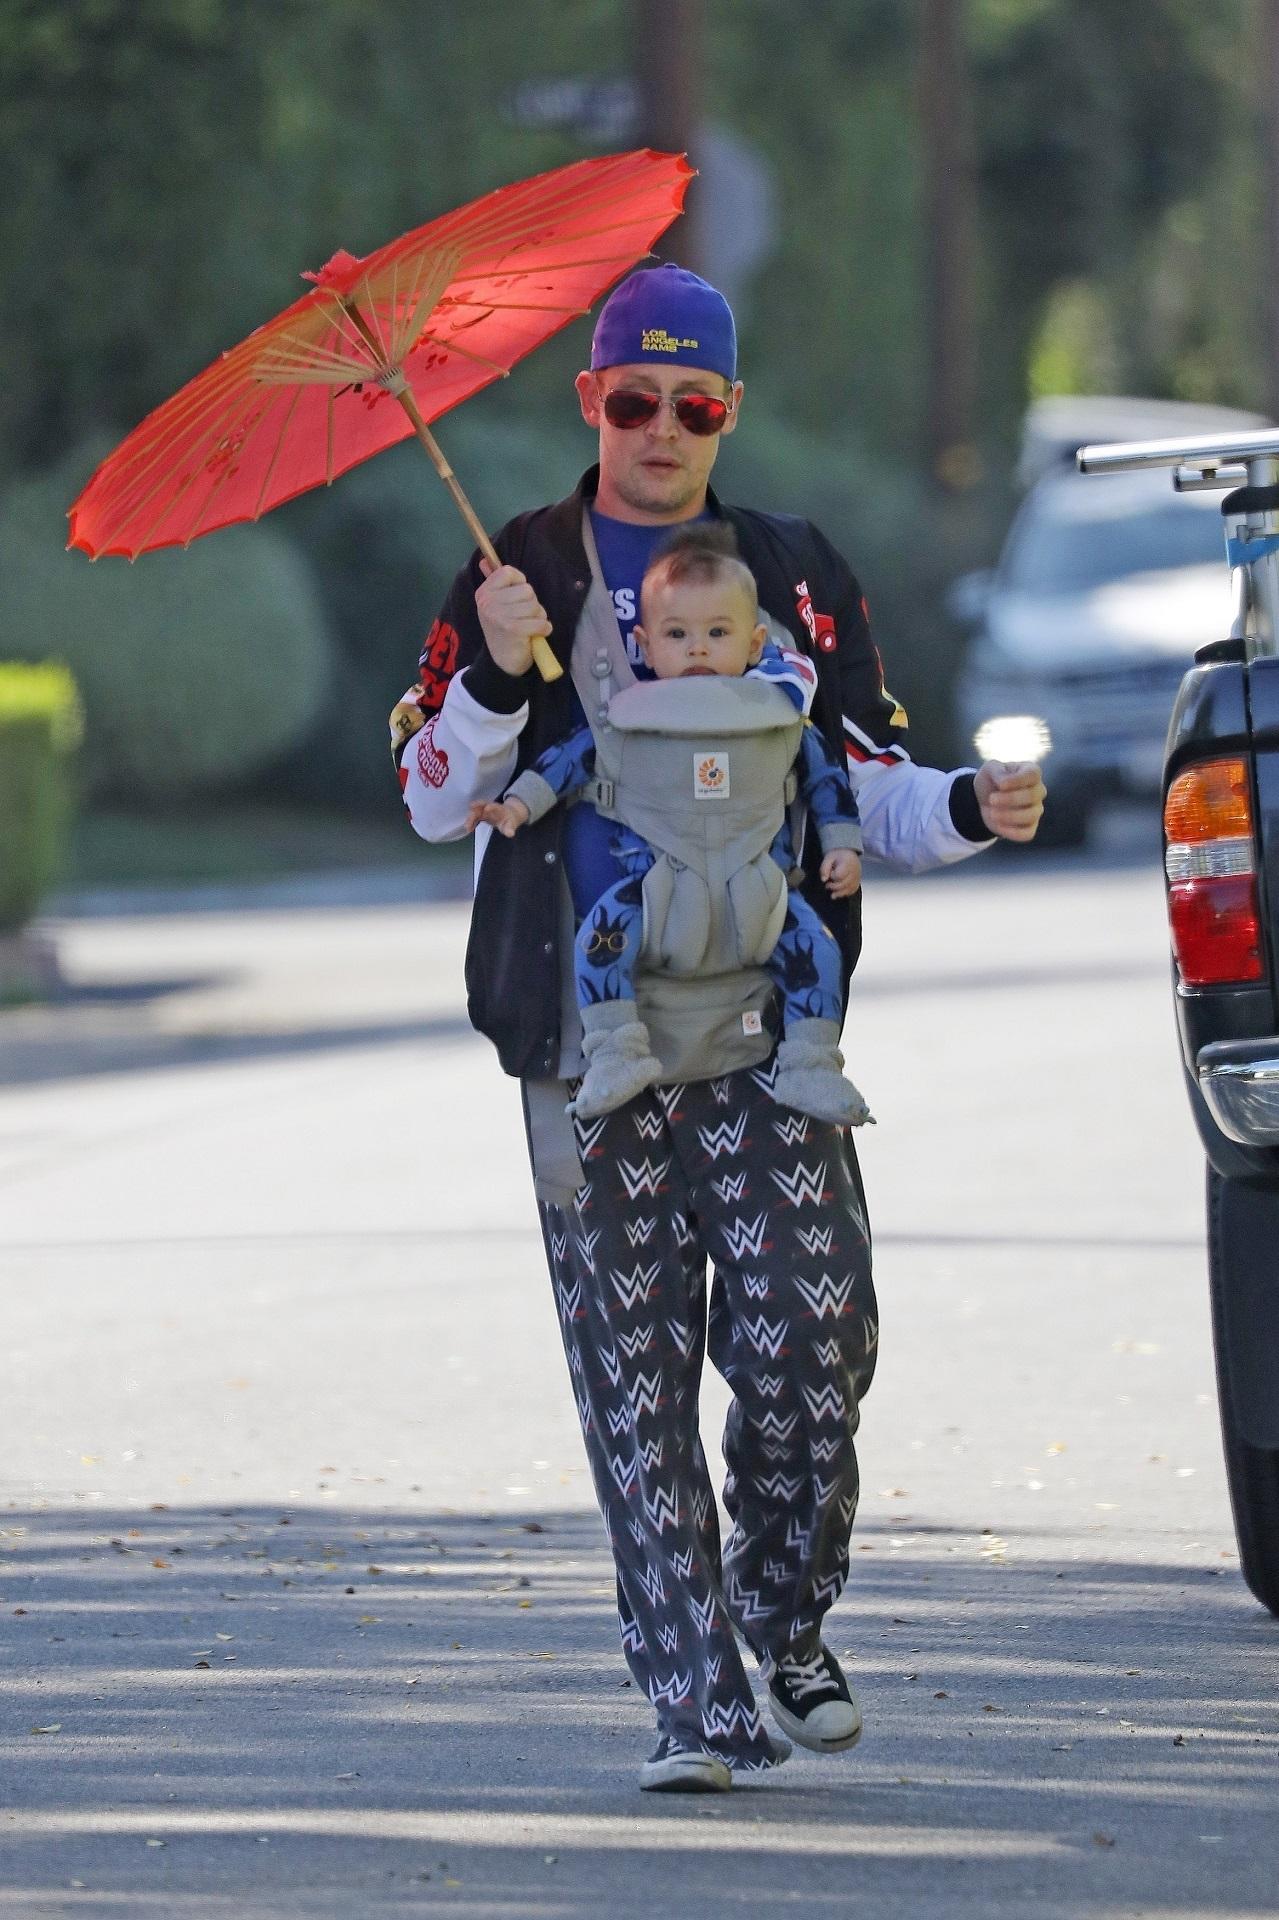 macaulay culkin, pe stradă, cu fiul lui, dakota. are o umbrelă asiatică portocalie și merge pe stradă